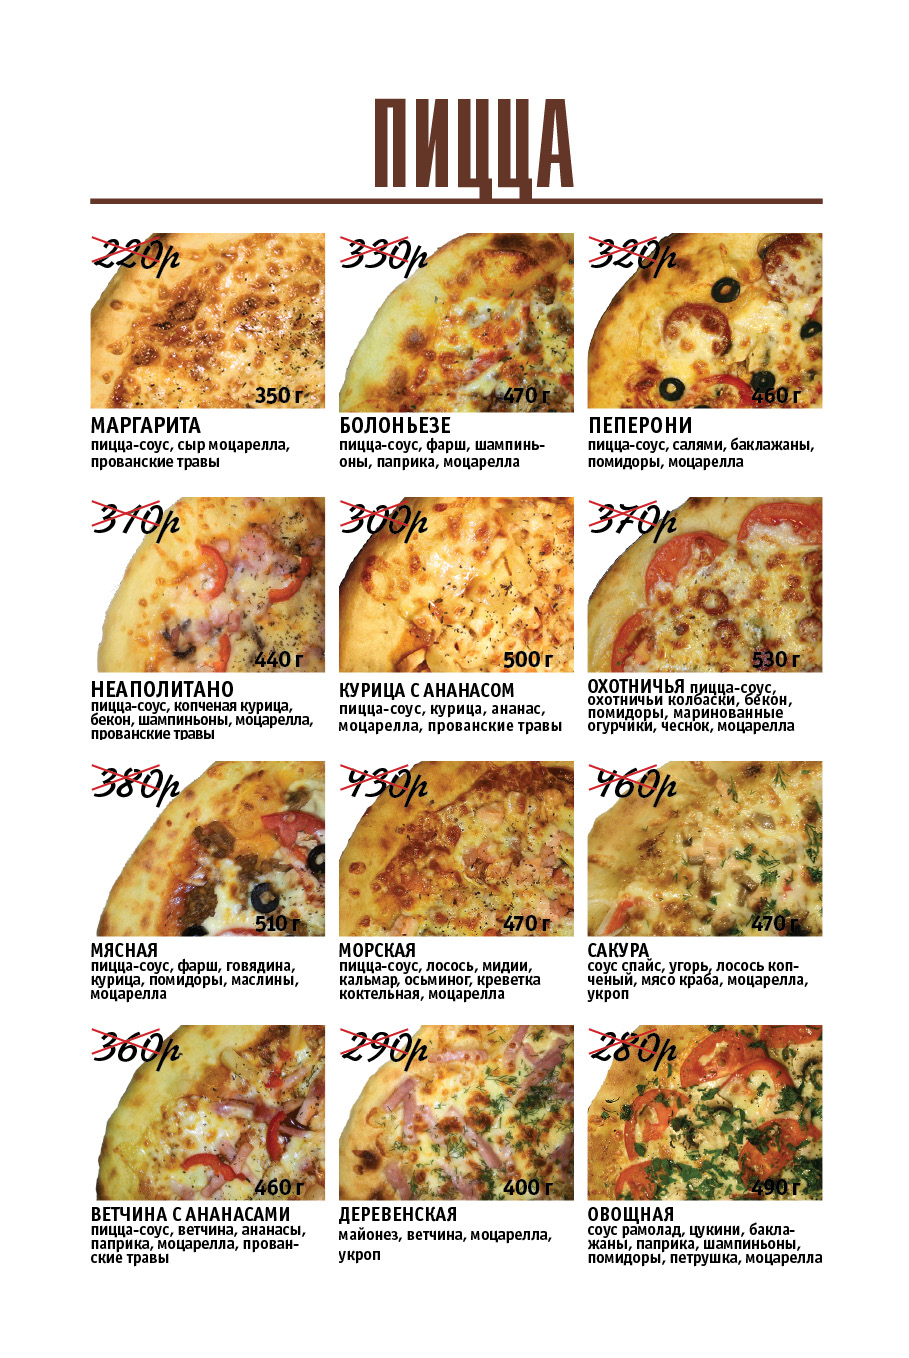 ассортимент пиццы в картинках и рецепты фото 10